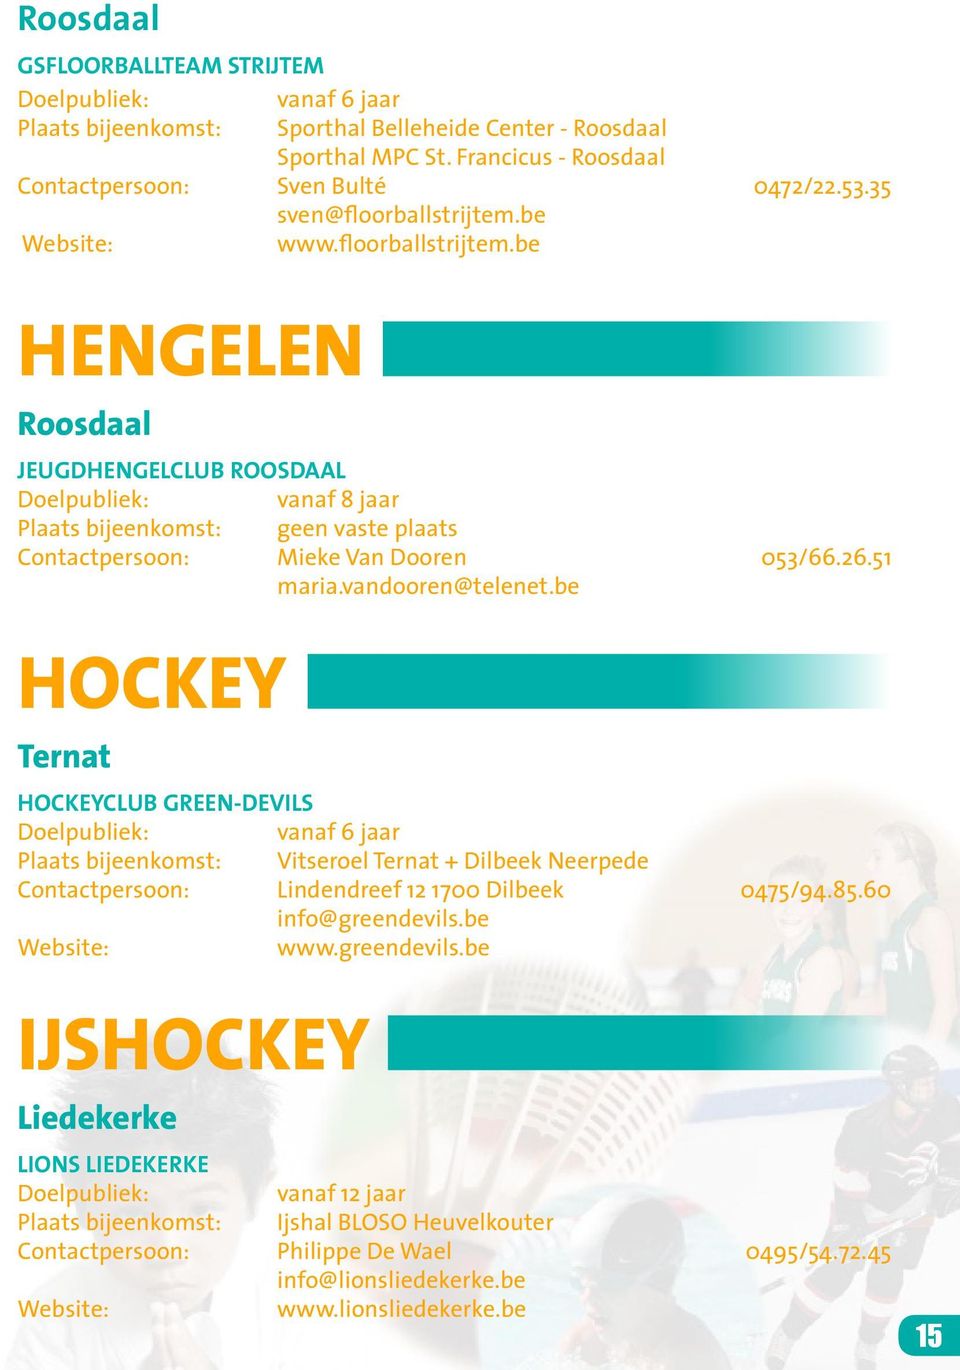 be hockey Ternat Hockeyclub Green-Devils Plaats bijeenkomst: Vitseroel Ternat + Dilbeek Neerpede Contactpersoon: Lindendreef 12 1700 Dilbeek 0475/94.85.60 info@greendevils.